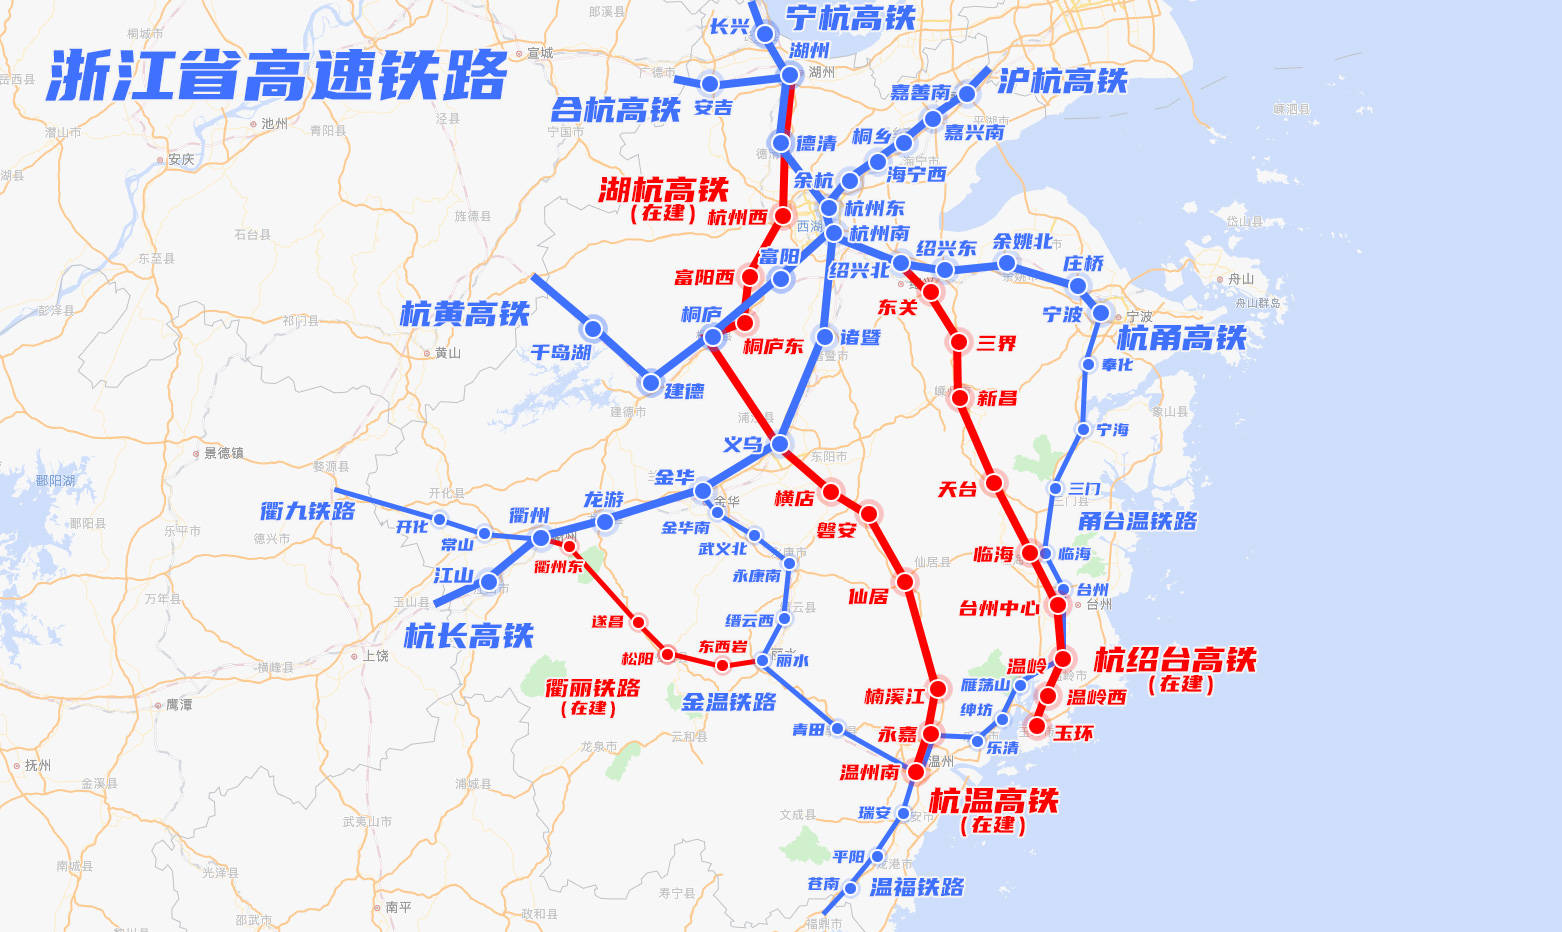 九景衢铁路已成功引入九江枢纽